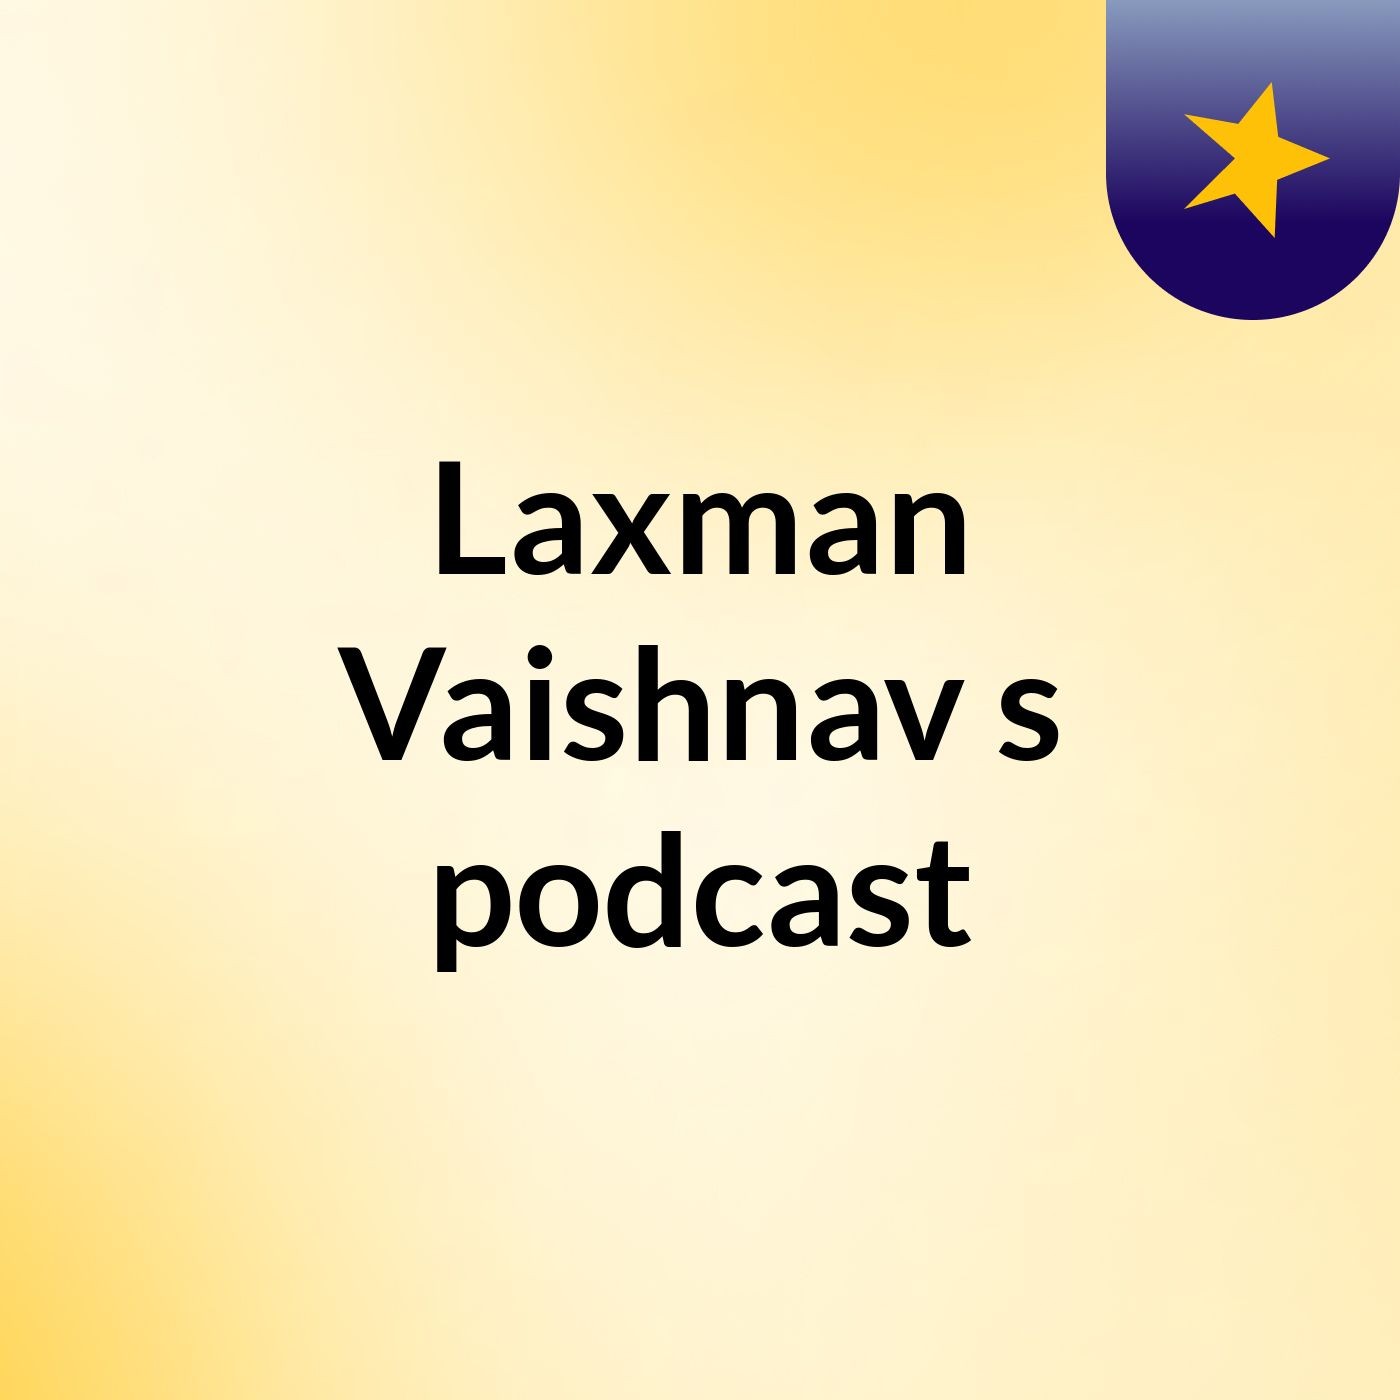 Laxman Vaishnav's podcast